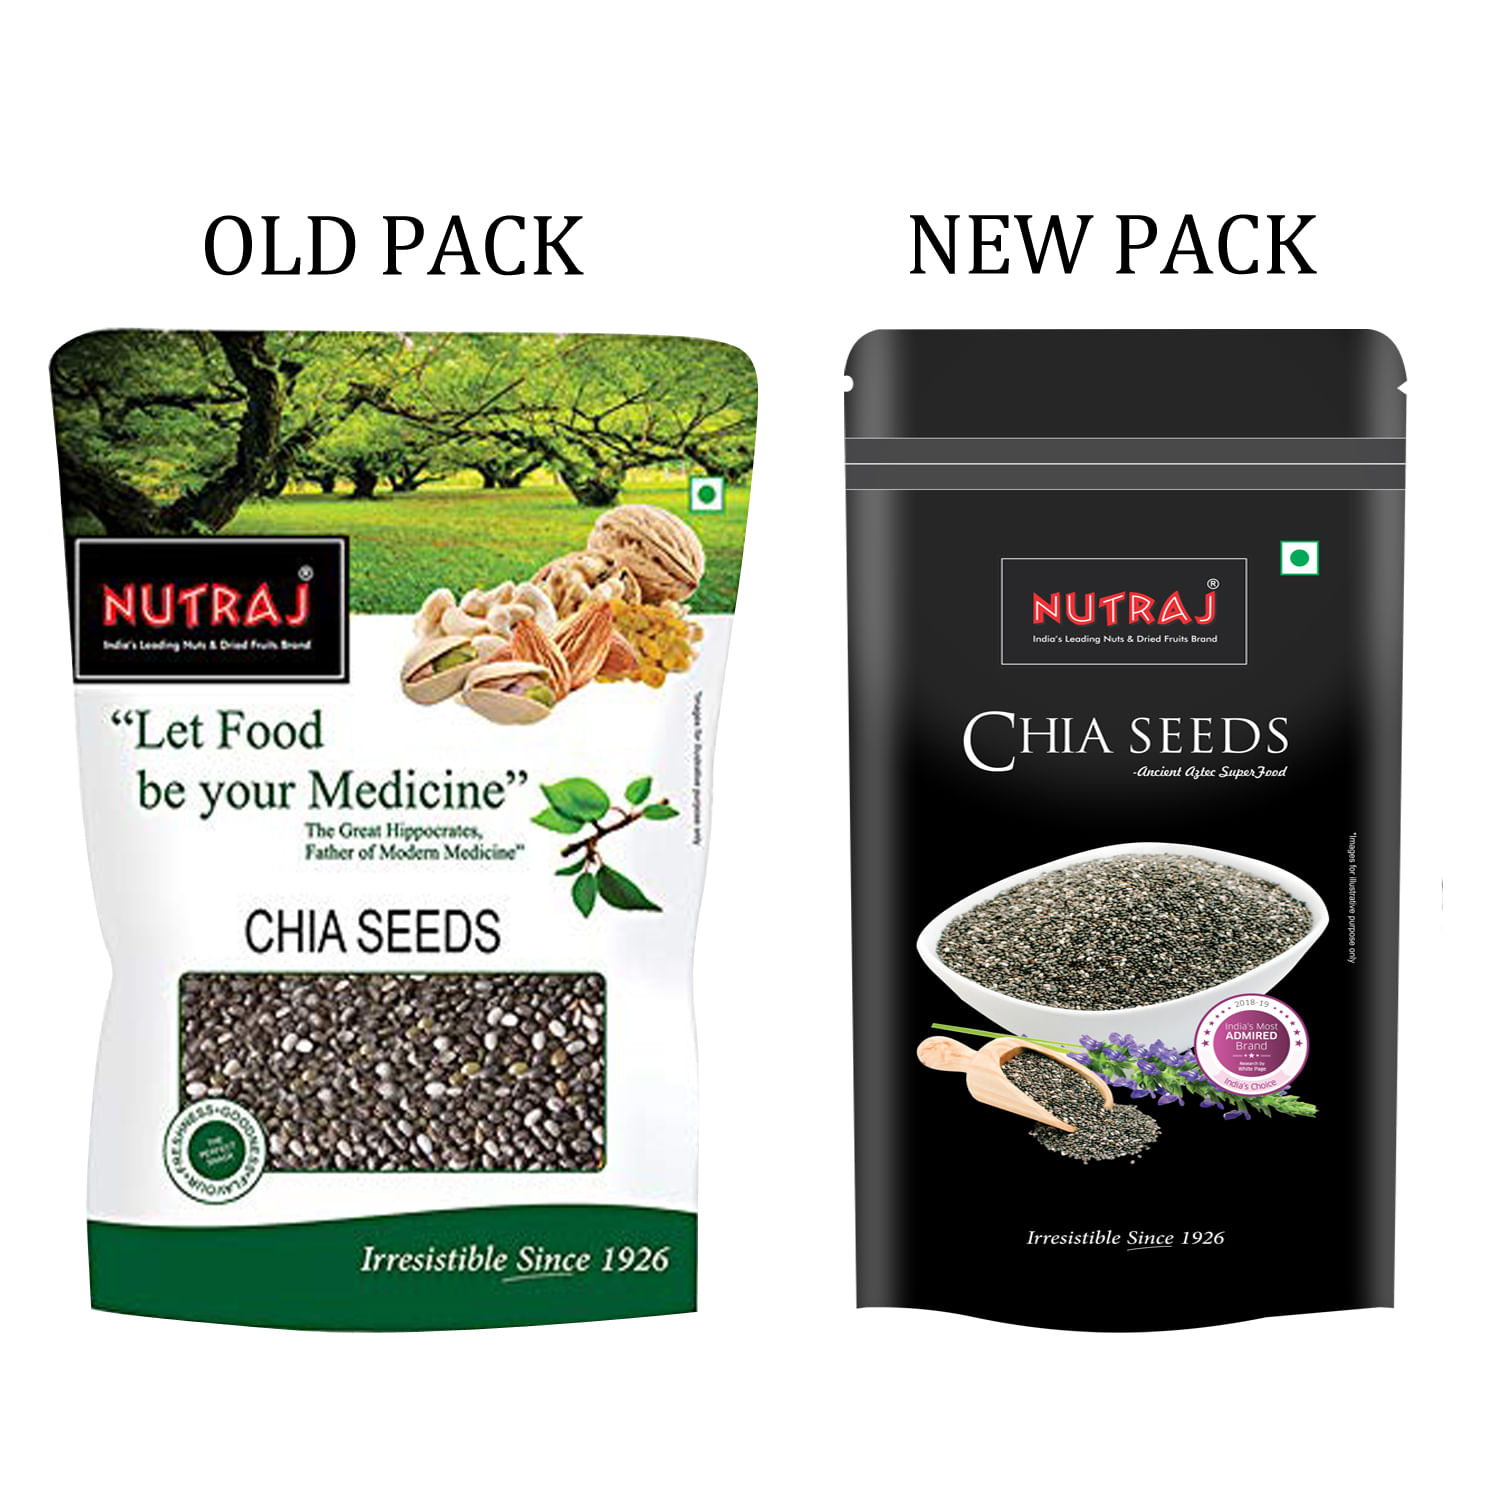 Buy Nutraj Chia Seeds 200gat Best Price in India